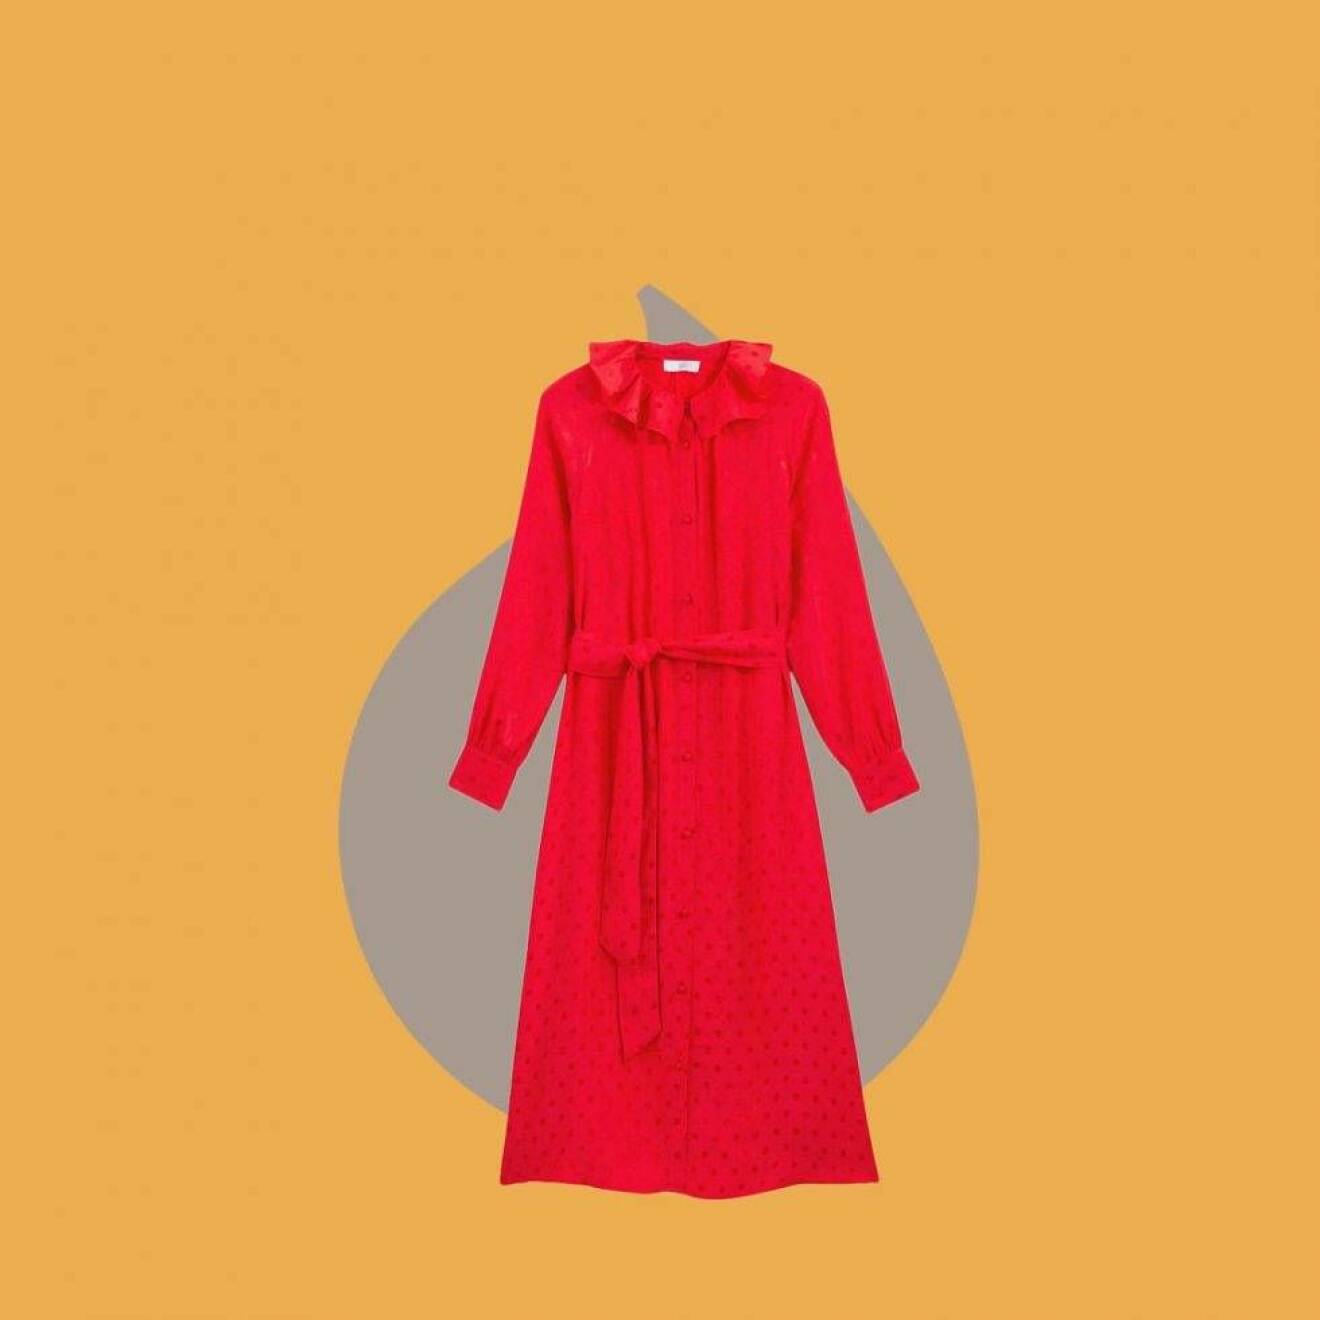 Röd klänning med krage och knytband i midjan